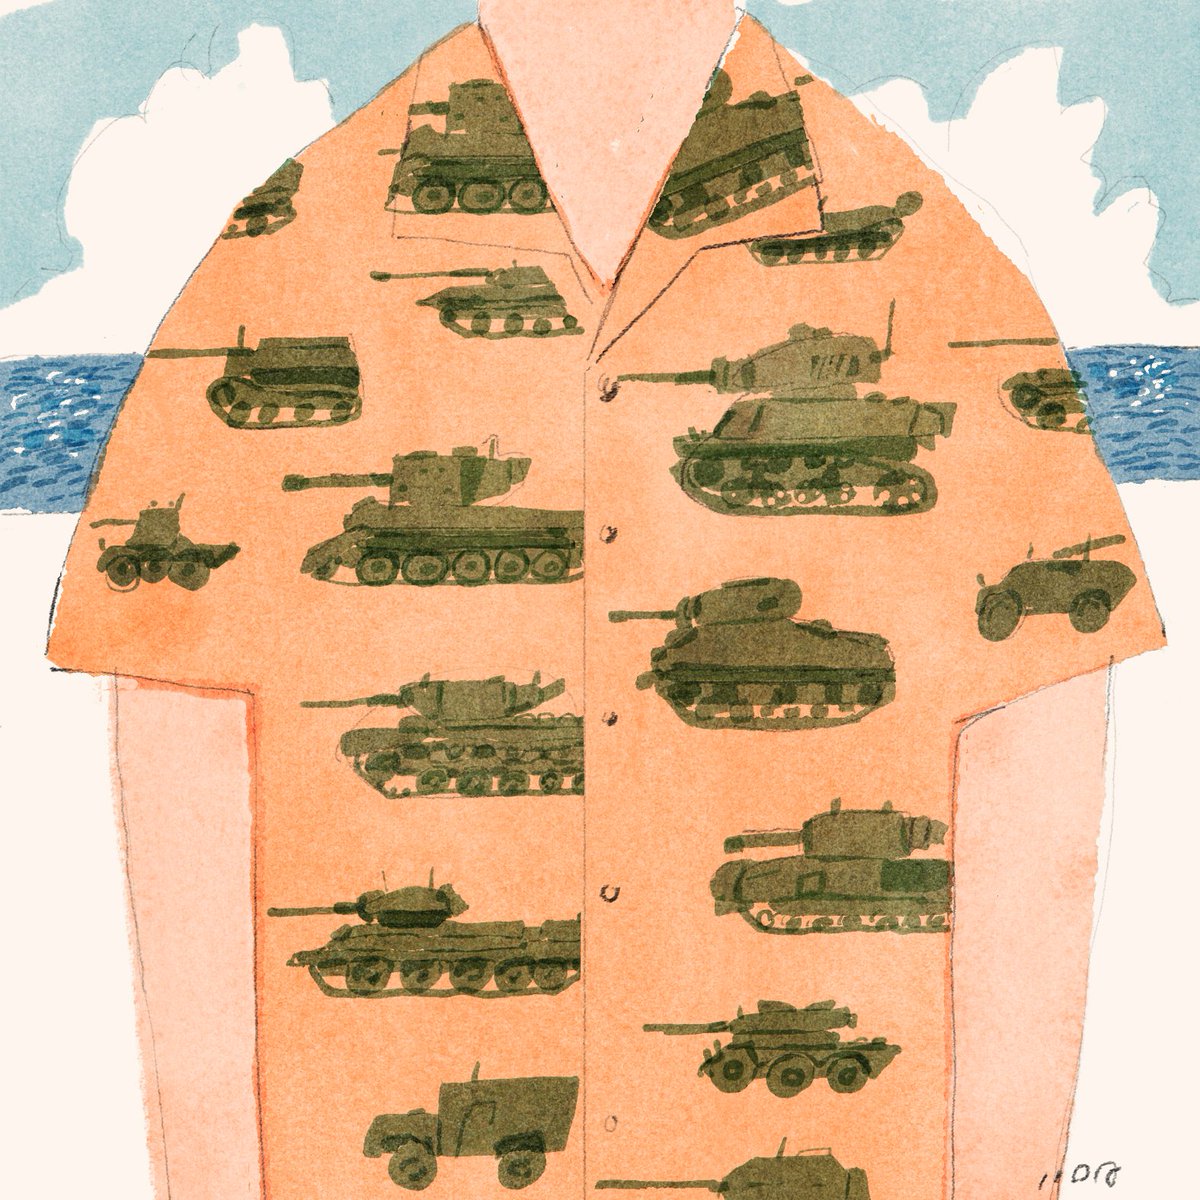 「tanks #戦車 」|飯田研人 Kento IIDAのイラスト